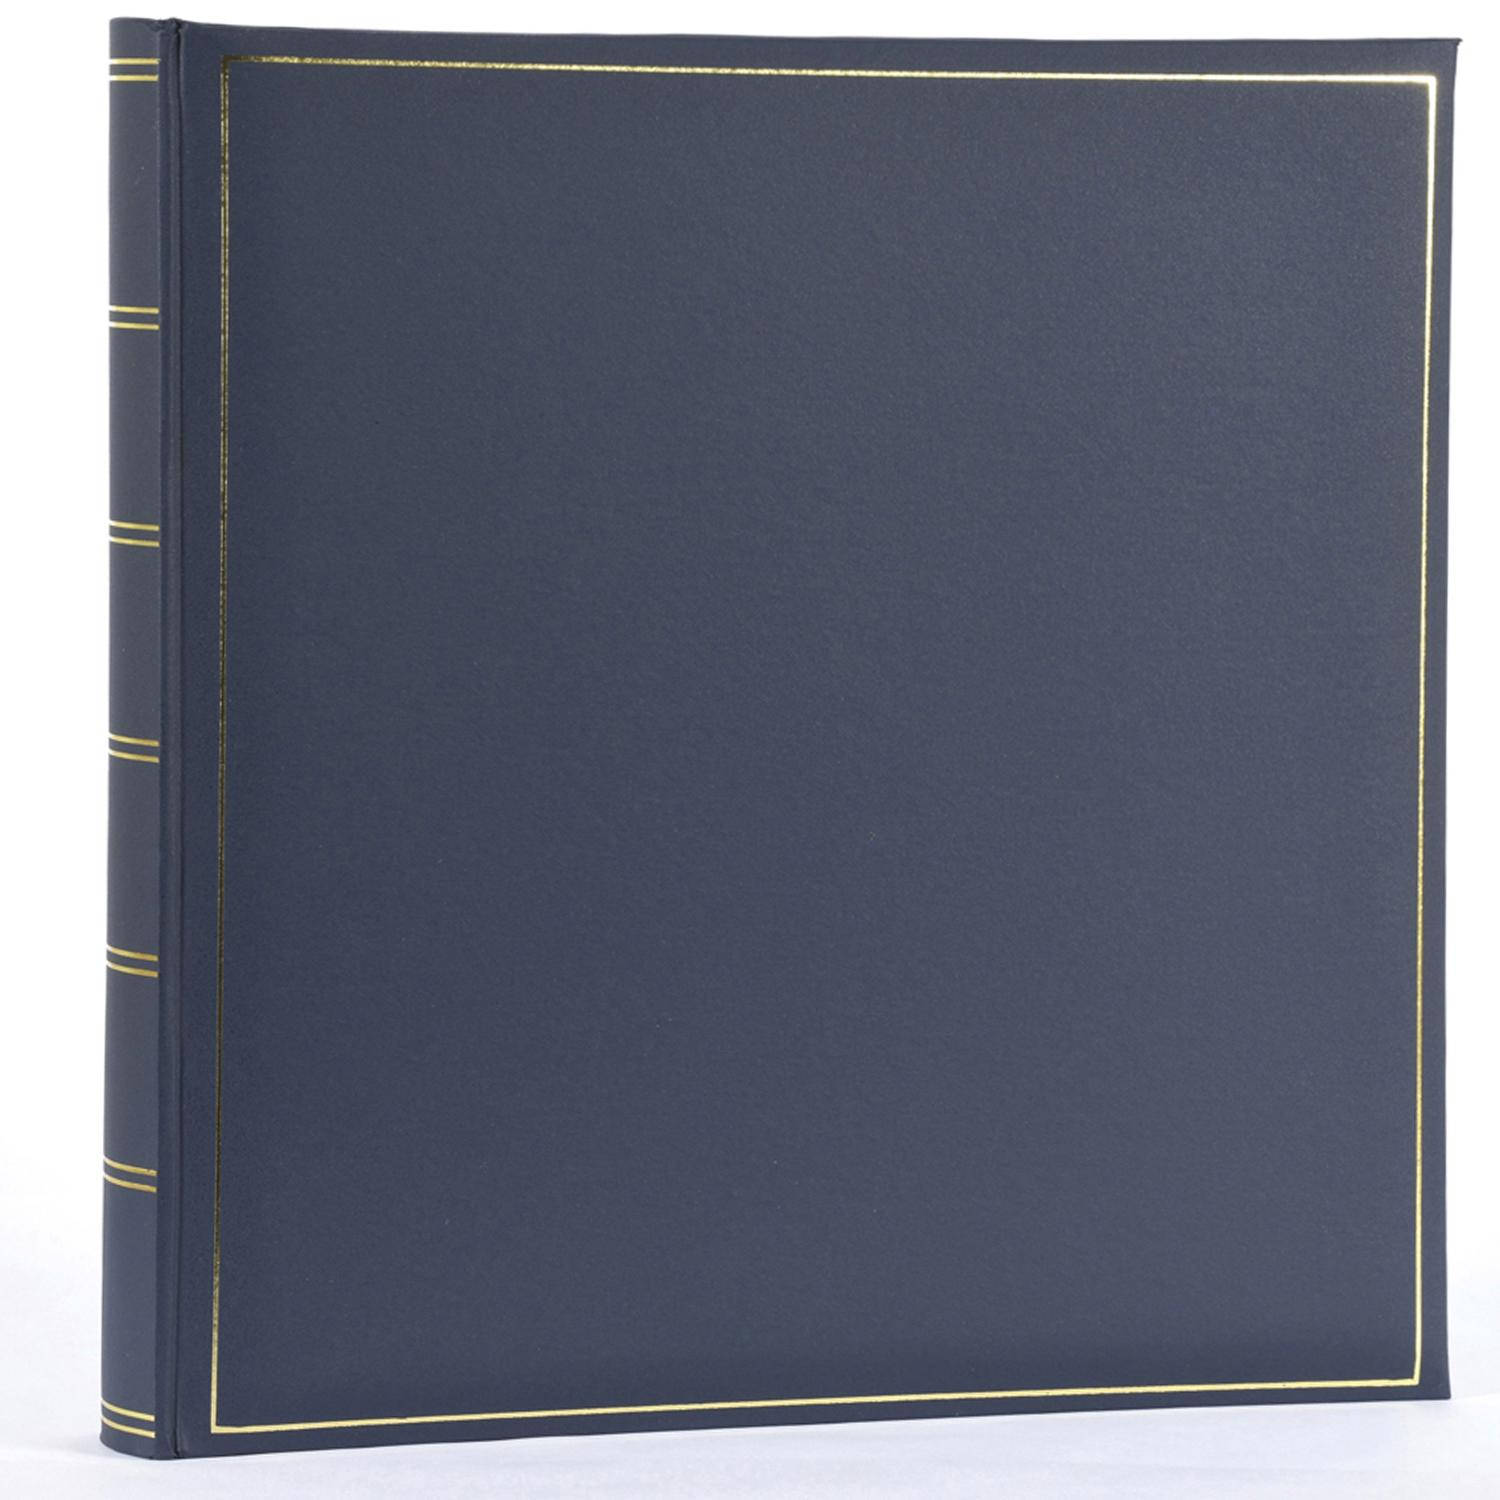 Henzo Henzo CHAMPAGNE blauw 35x35 70 witte pagina's    1019807 (10.198.07)